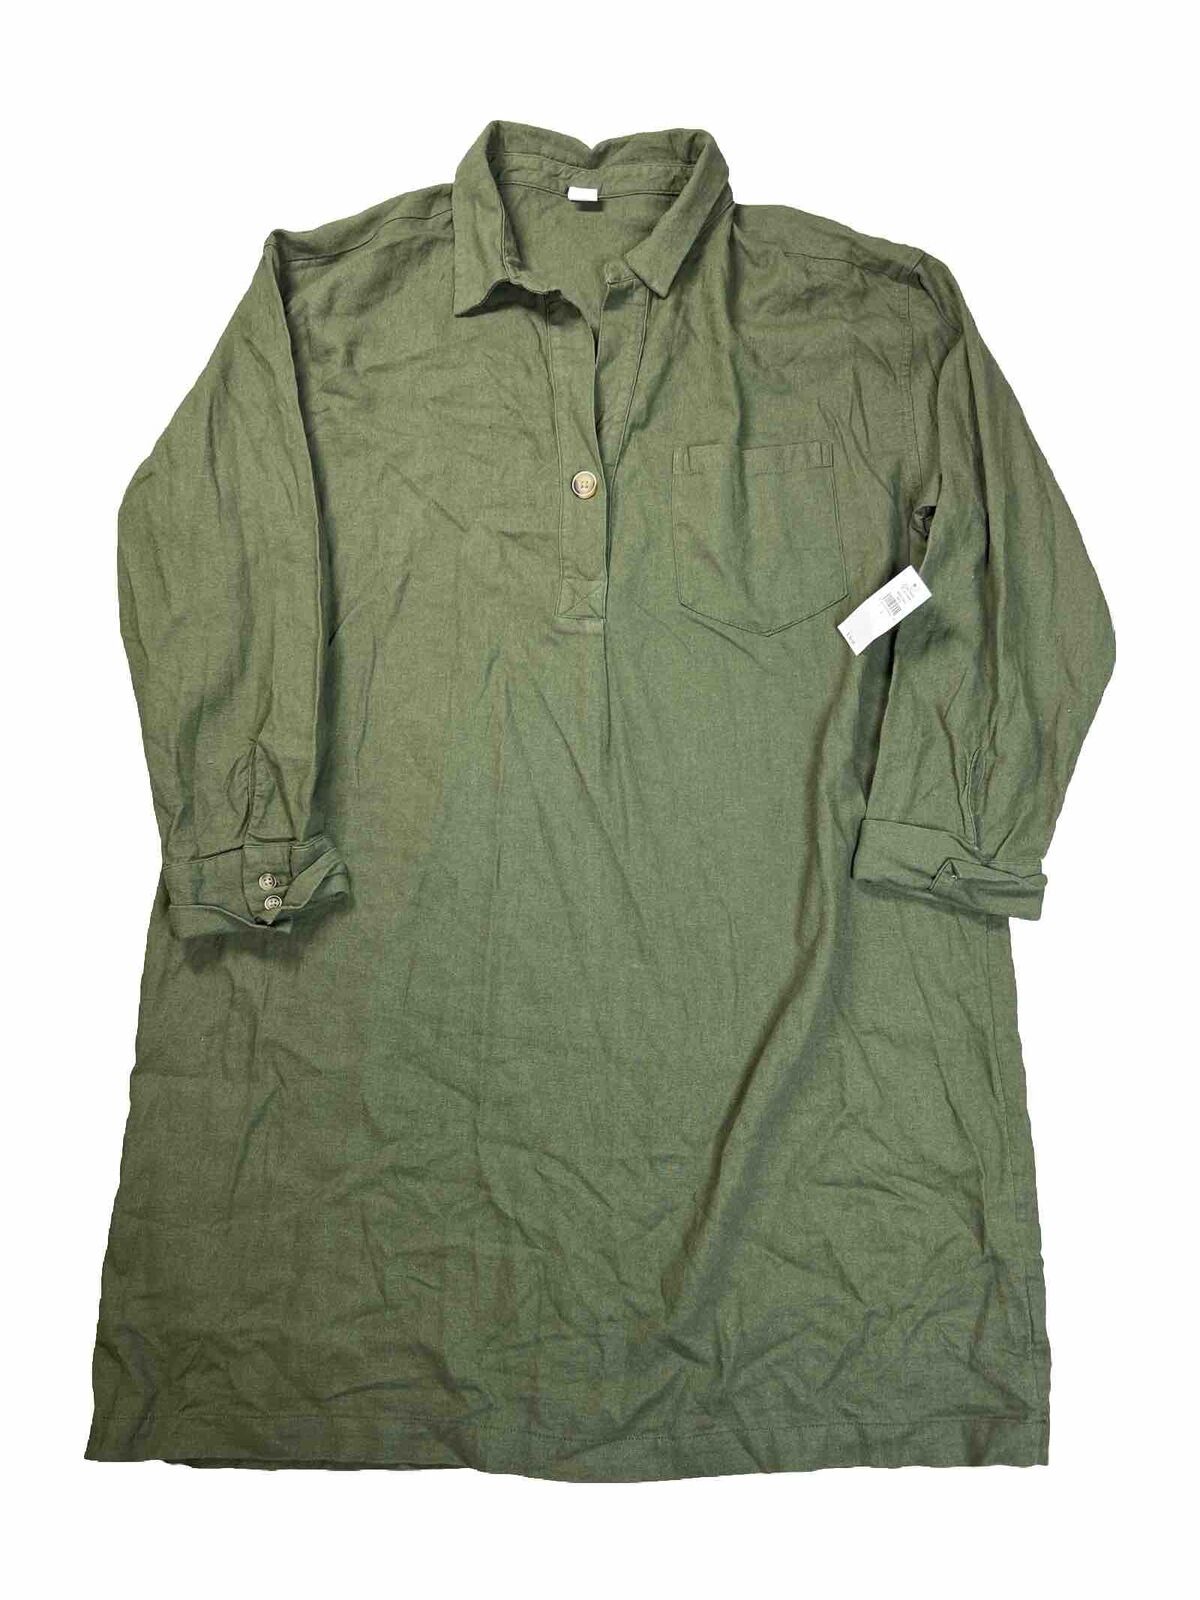 NEW Old Navy Women's Green Linen Blend Shirt Dress - L